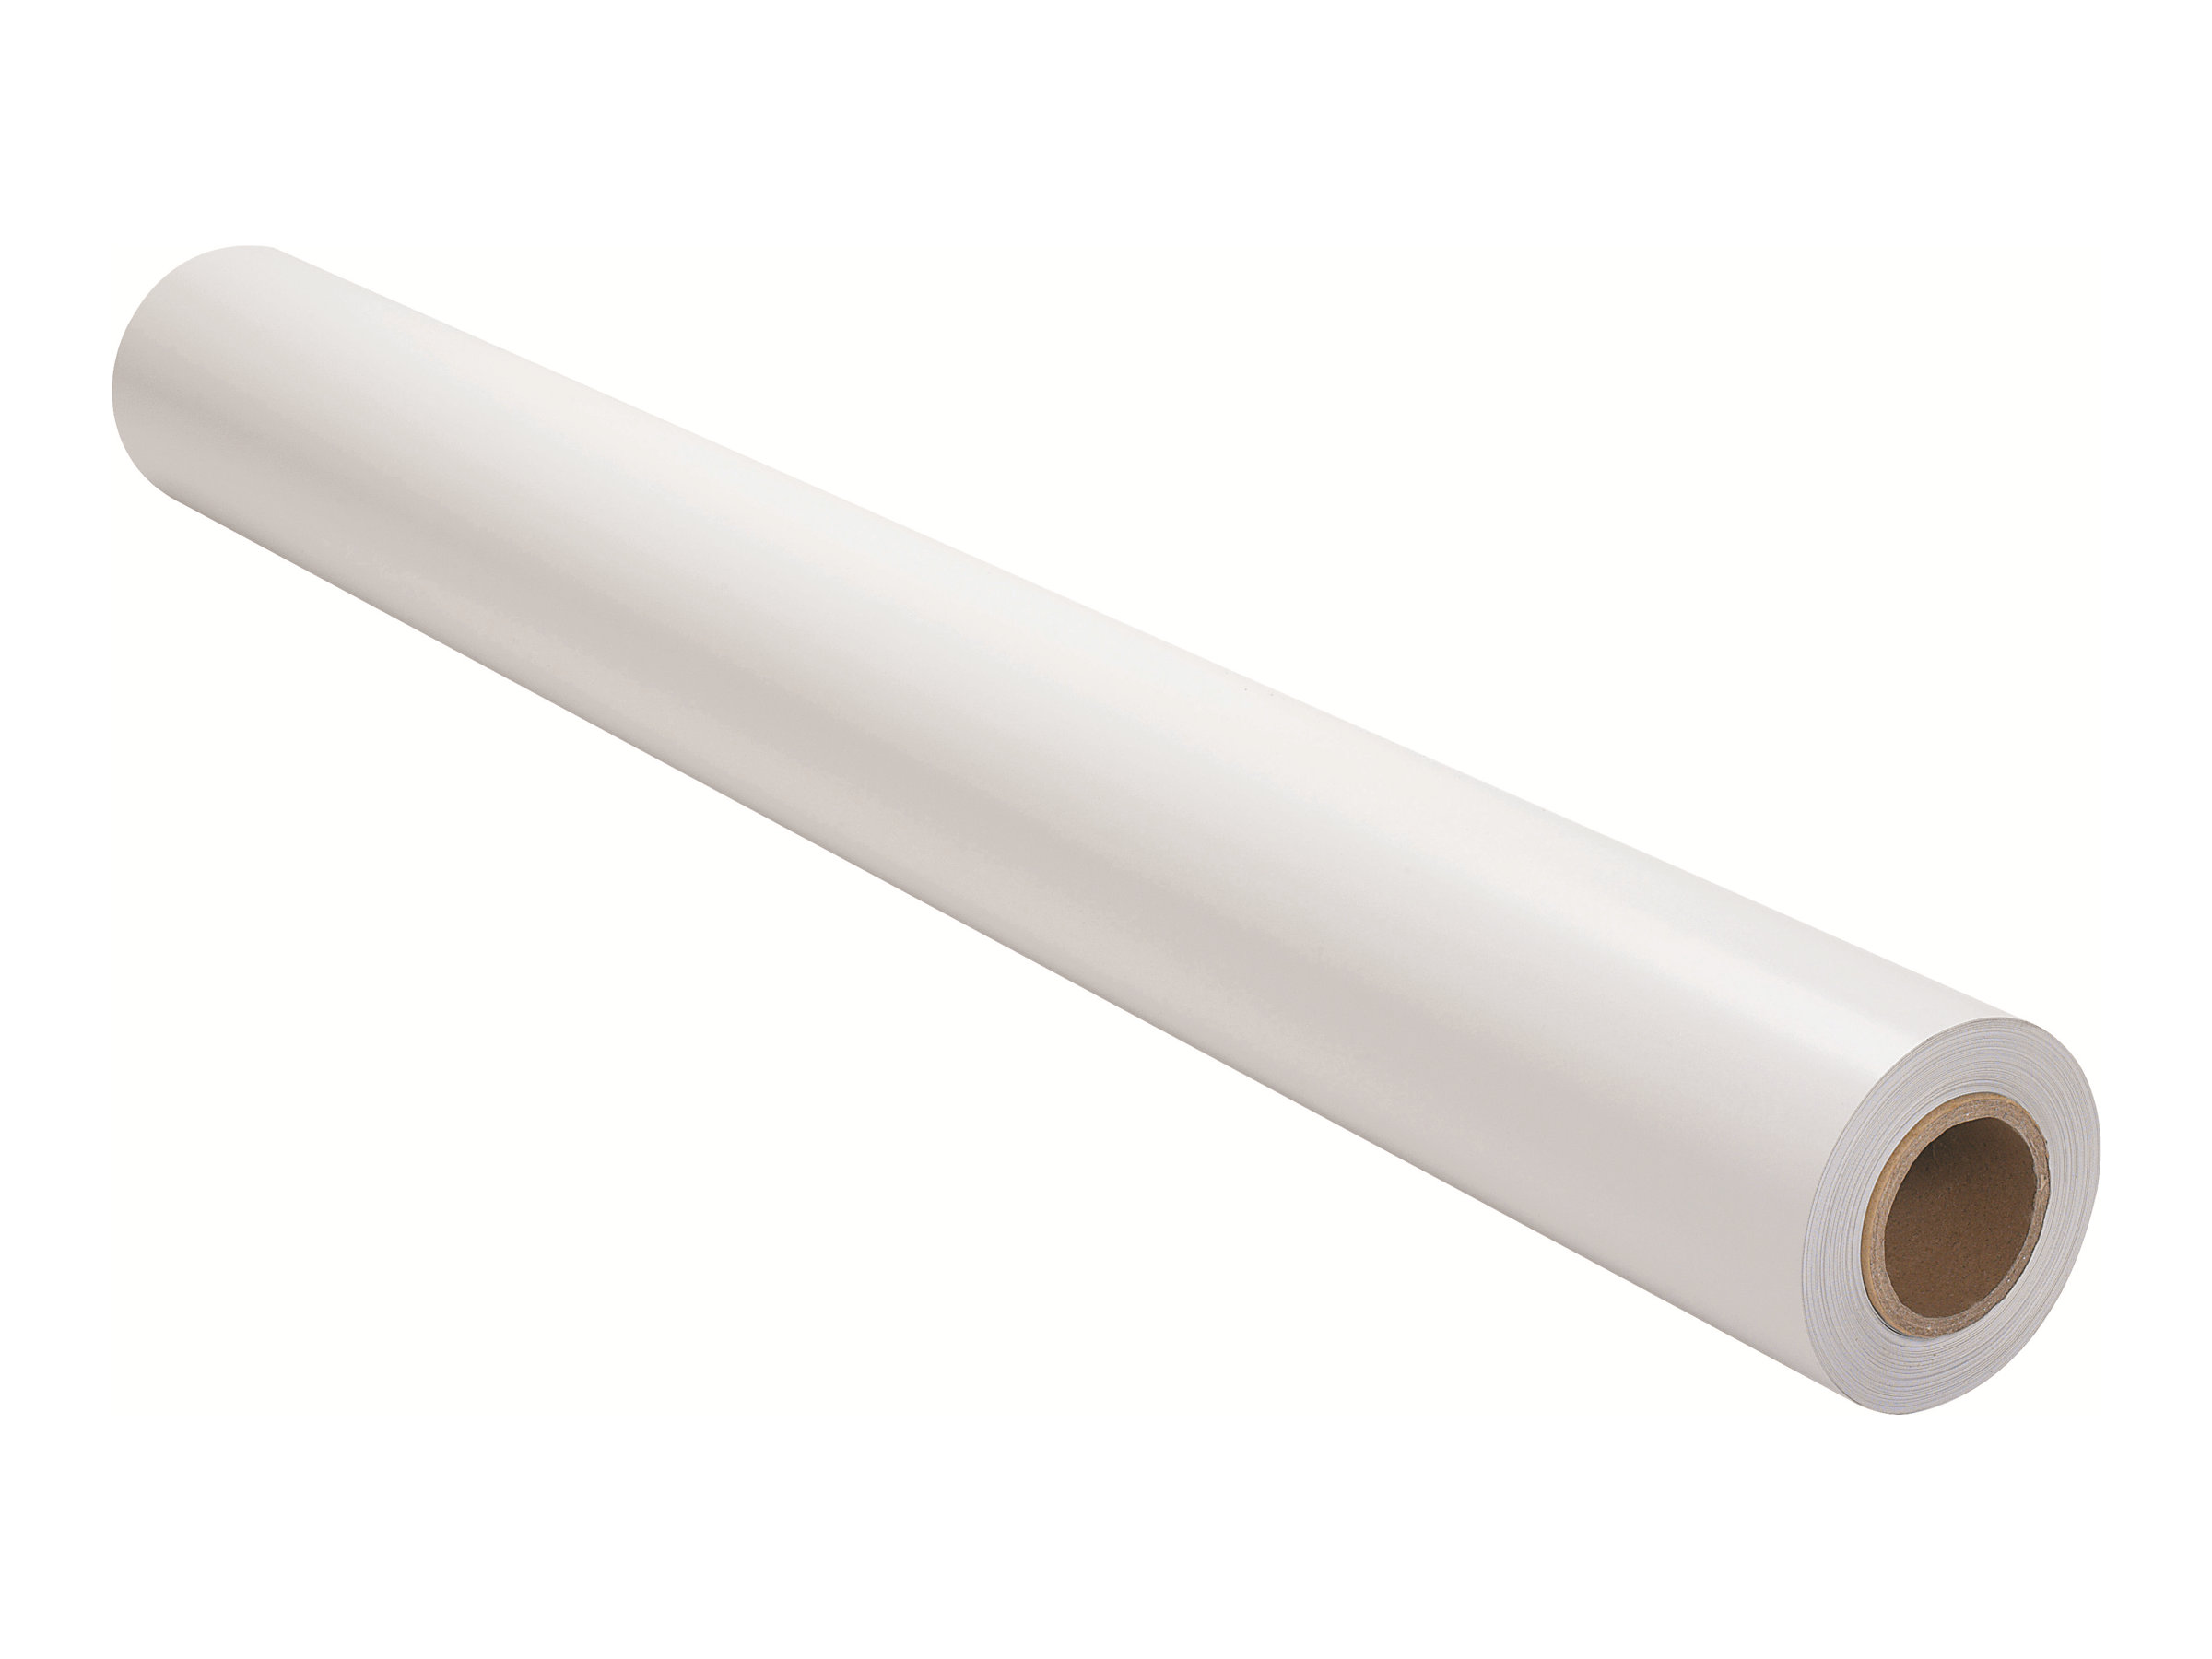 HP Bright White Inkjet Paper - Matt - hochweiß - Rolle (91,4 cm x 45,7 m) - 90 g/m² - 1 Rolle(n) Papier